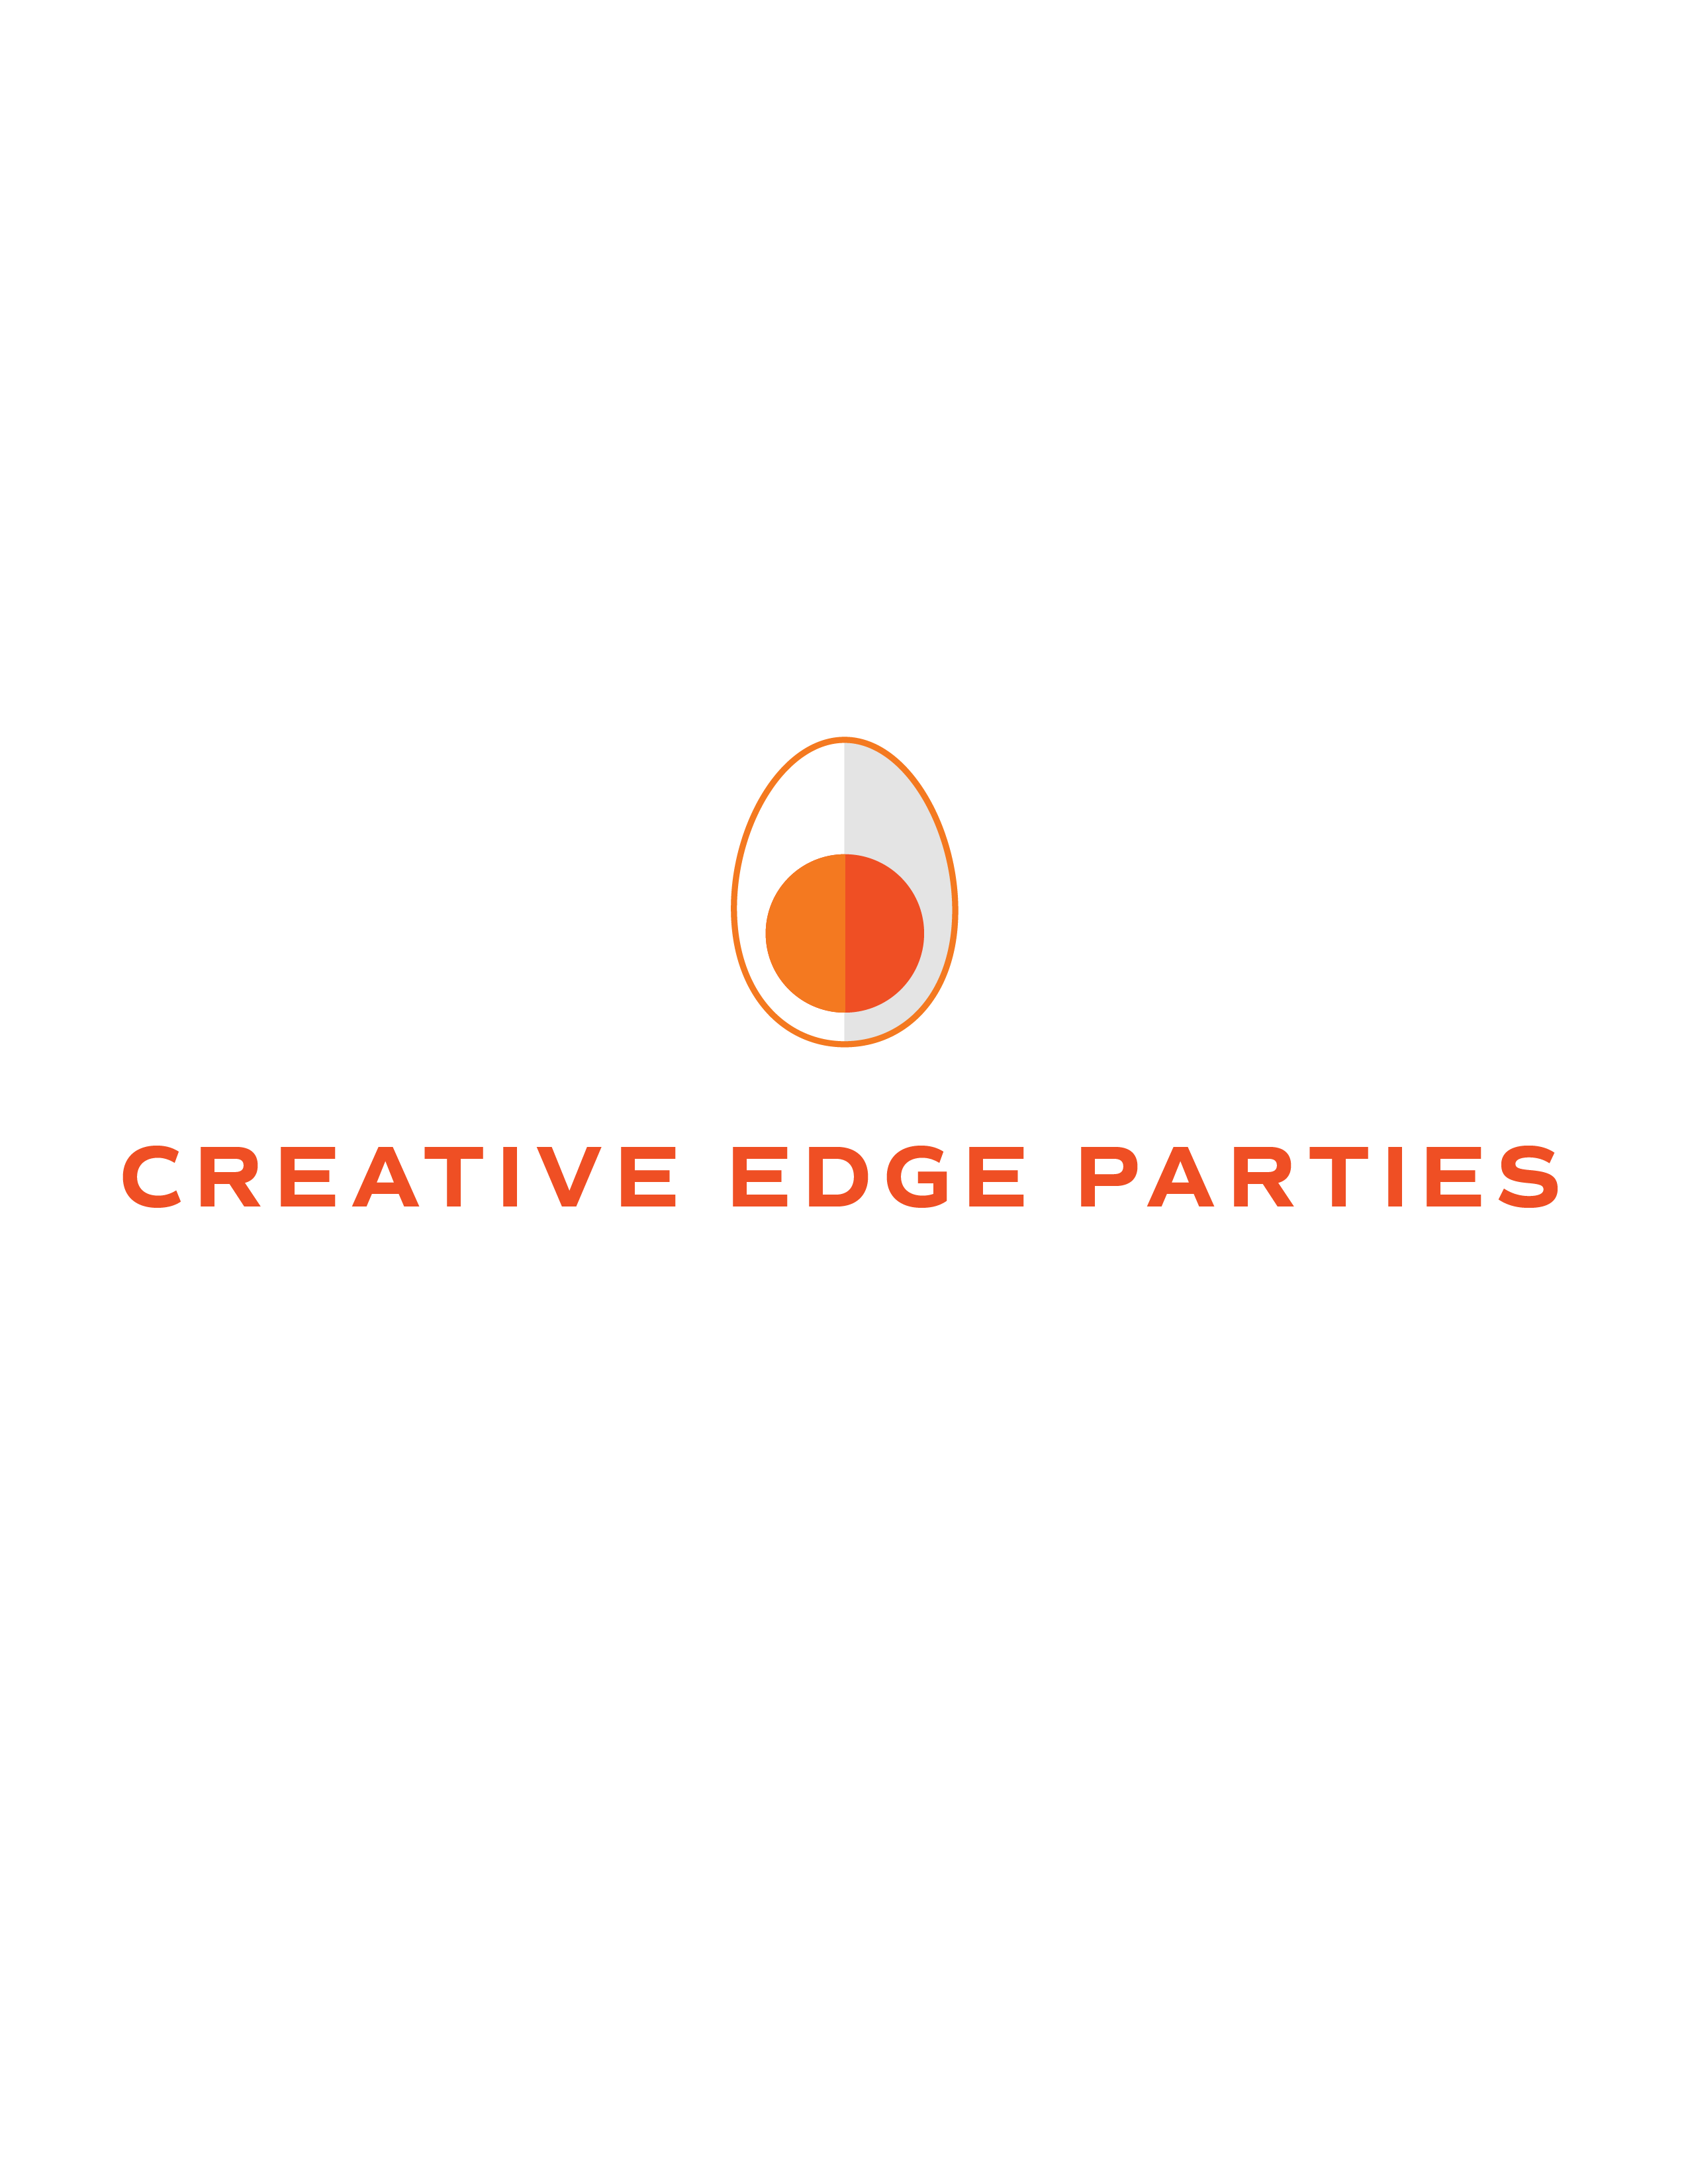 Creative Edge Parties